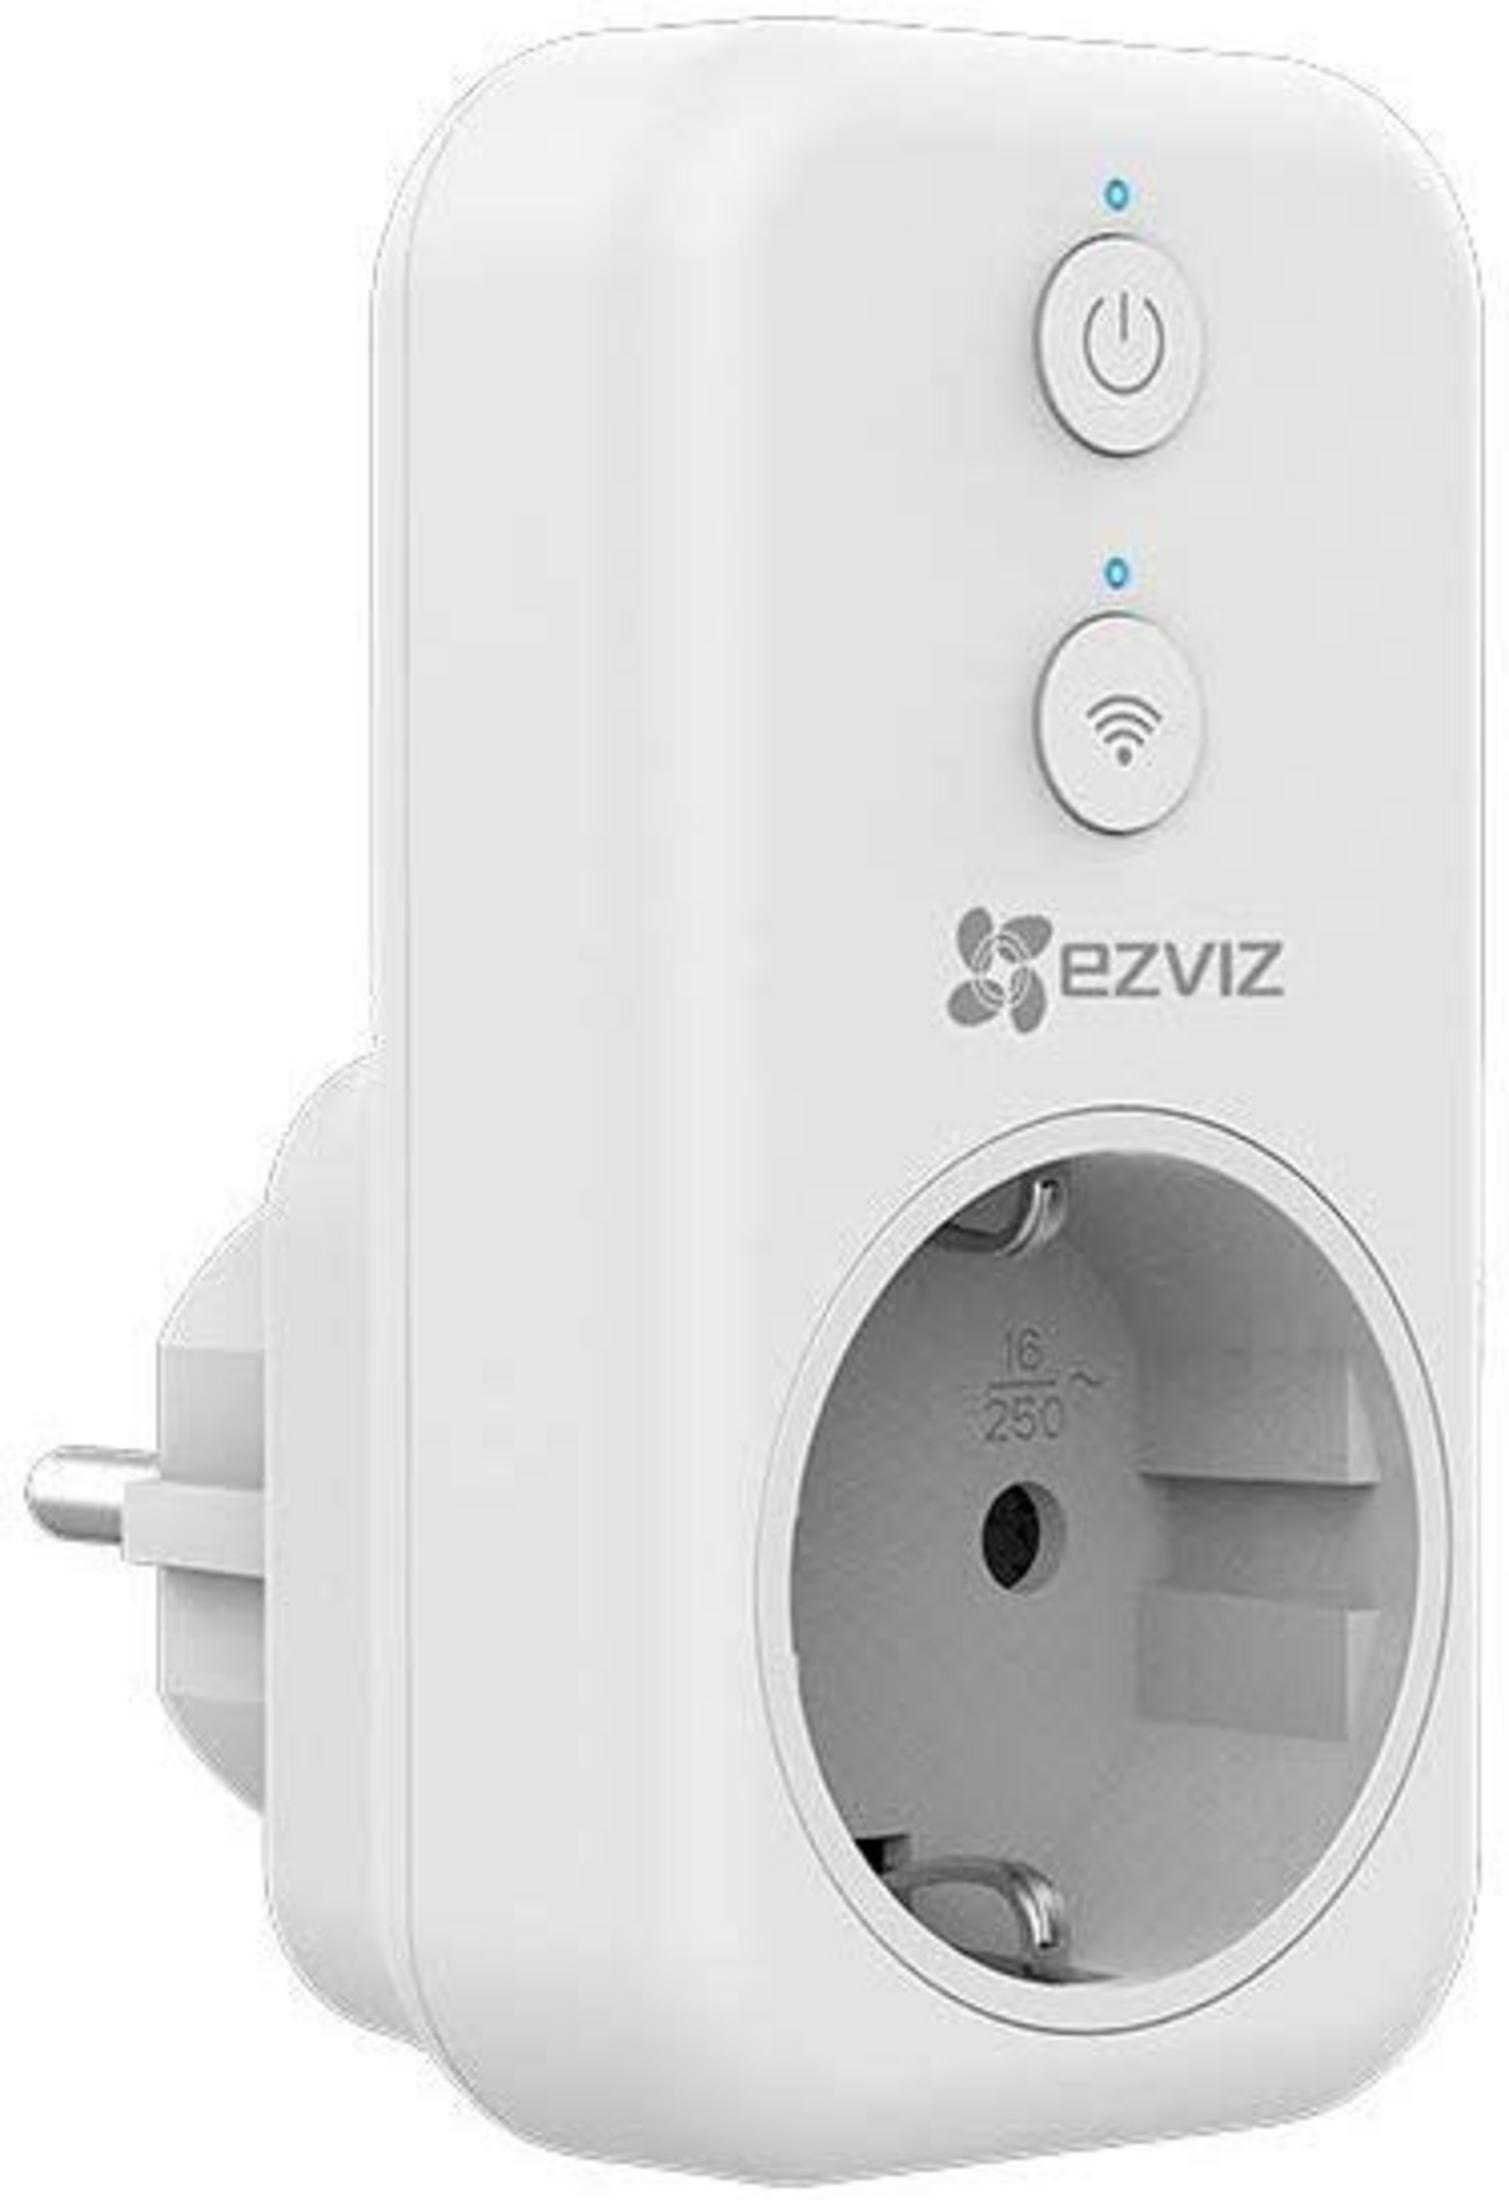 EZVIZ T31 BASIC (WHITE) Smart Plug